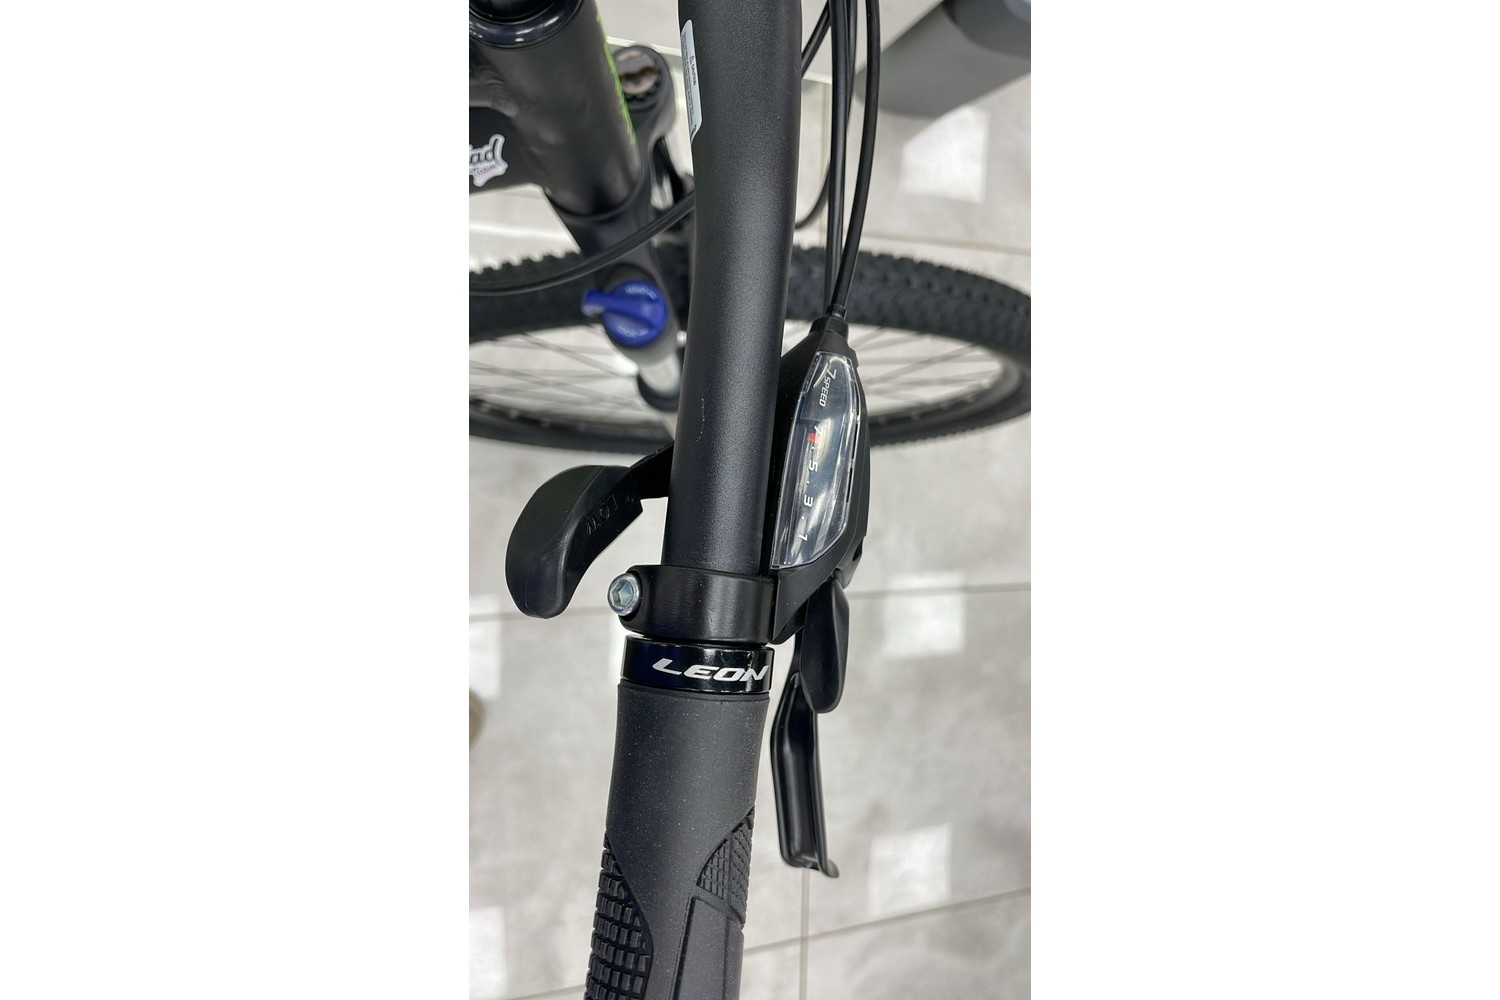 Горный велосипед Format 1415 29 FR, год 2023, цвет Черный, ростовка 21